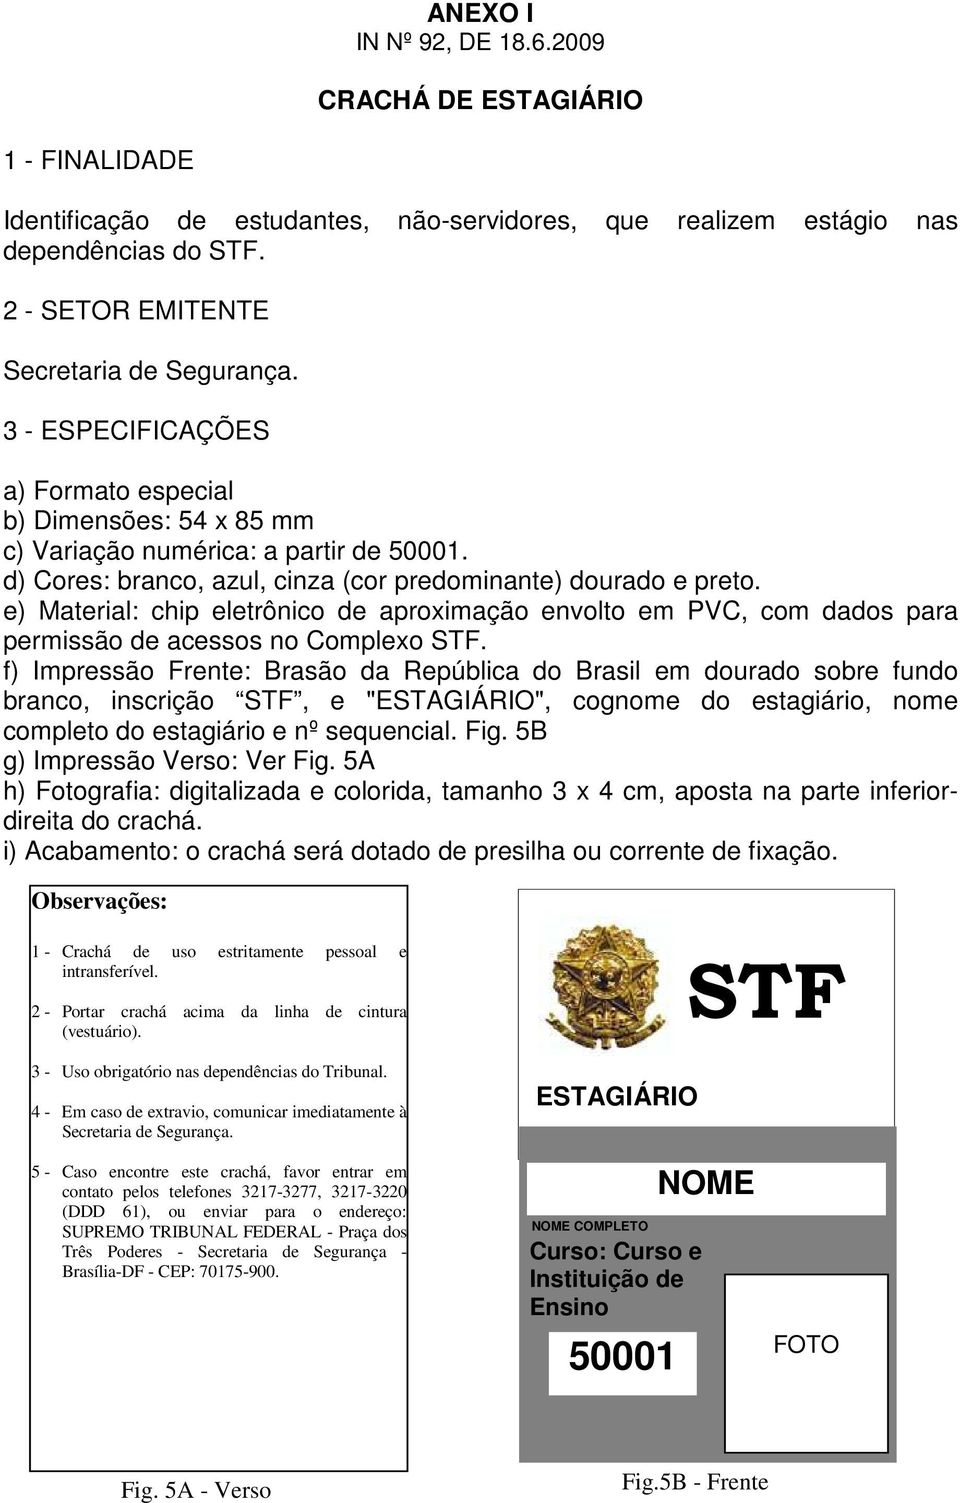 f) Impressão Frente: Brasão da República do Brasil em dourado sobre fundo branco, inscrição STF, e "ESTAGIÁRIO", cognome do estagiário, nome completo do estagiário e nº sequencial. Fig.